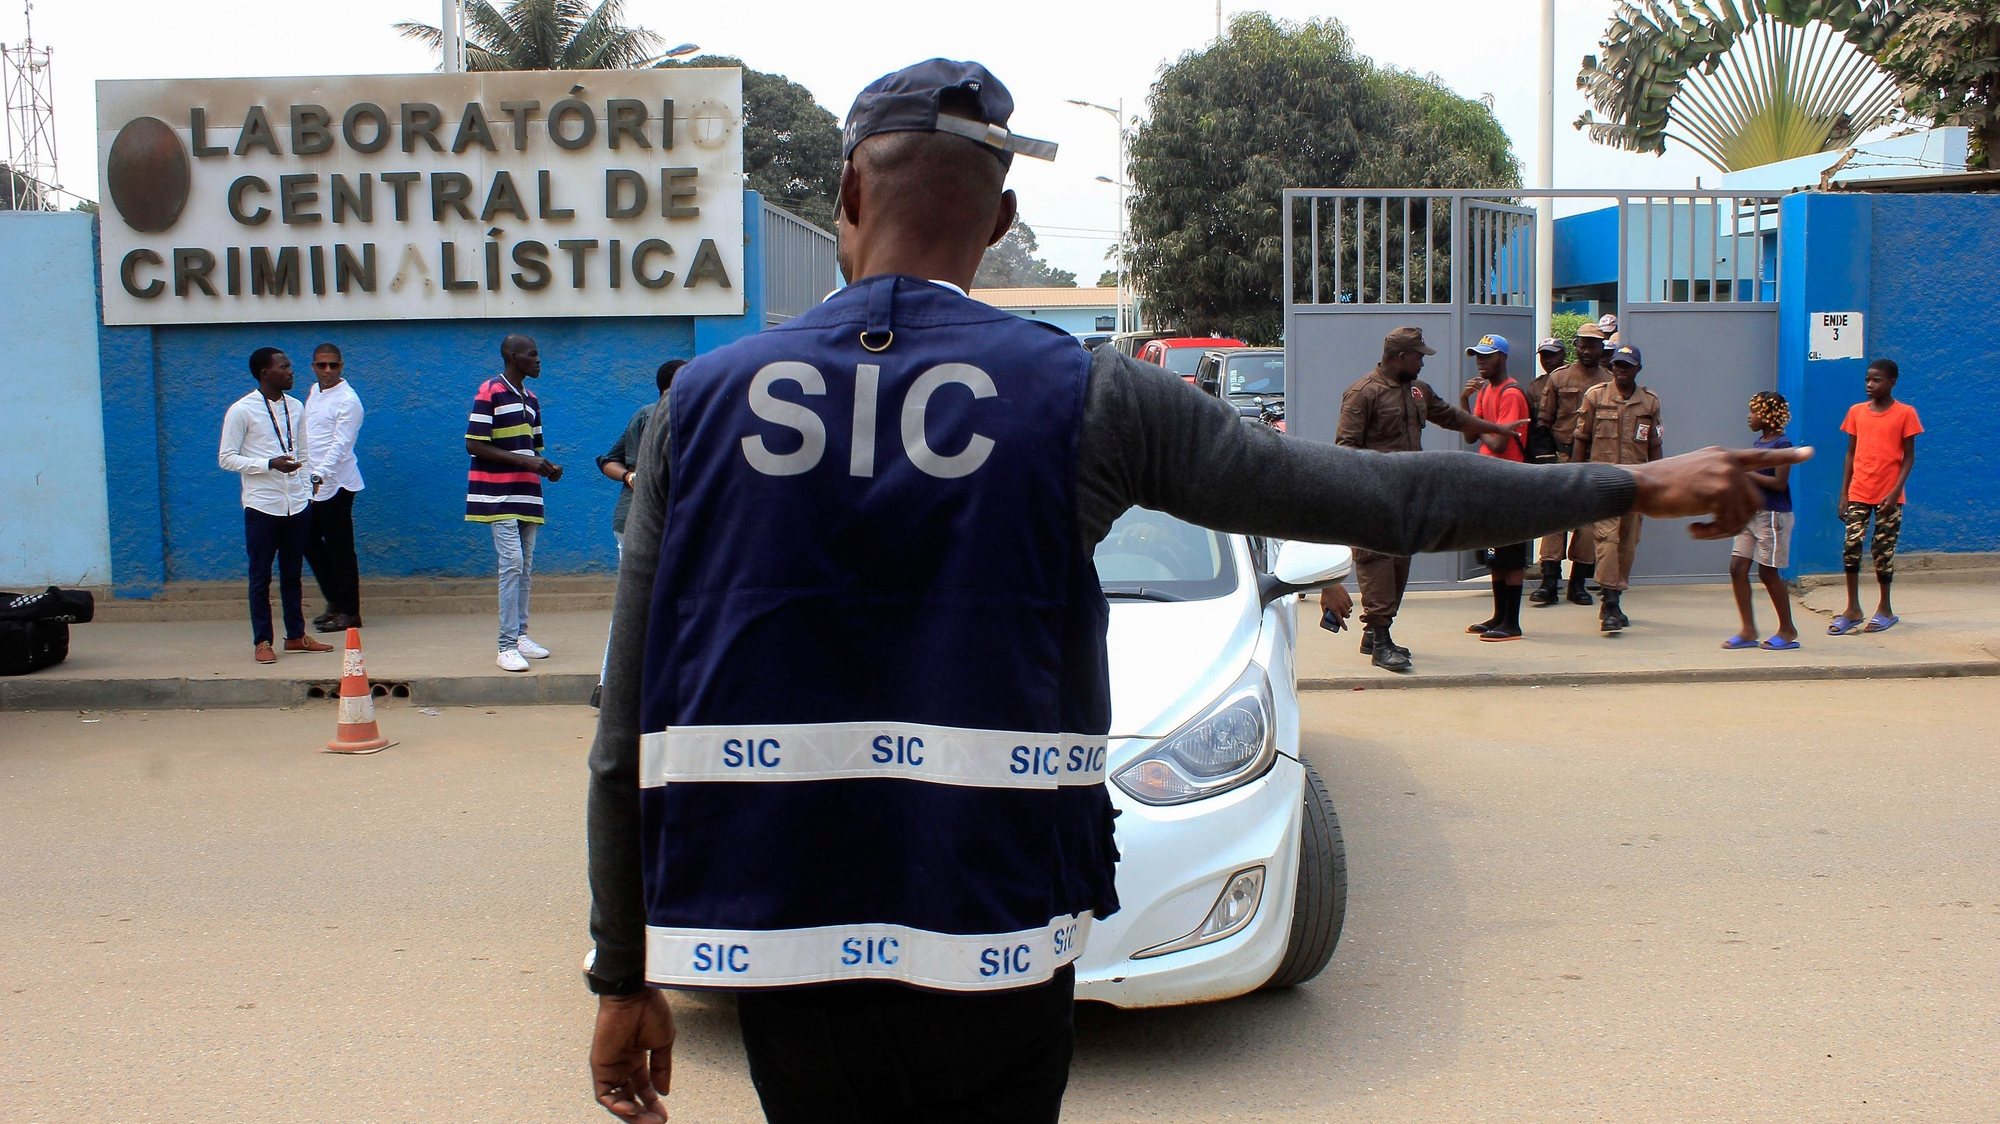 As autoridades angolanas apreenderam cerca de 700 quilogramas de marfim e de escamas de pangolim na sequência da detenção de um grupo de 13 criminosos, entre angolanos e estrangeiros, que se dedicavam à caça furtiva, na sede do Laboratório de Criminalística, em Luanda, Angola, 22 de agosto de 2019. AMPE ROGÉRIO/LUSA